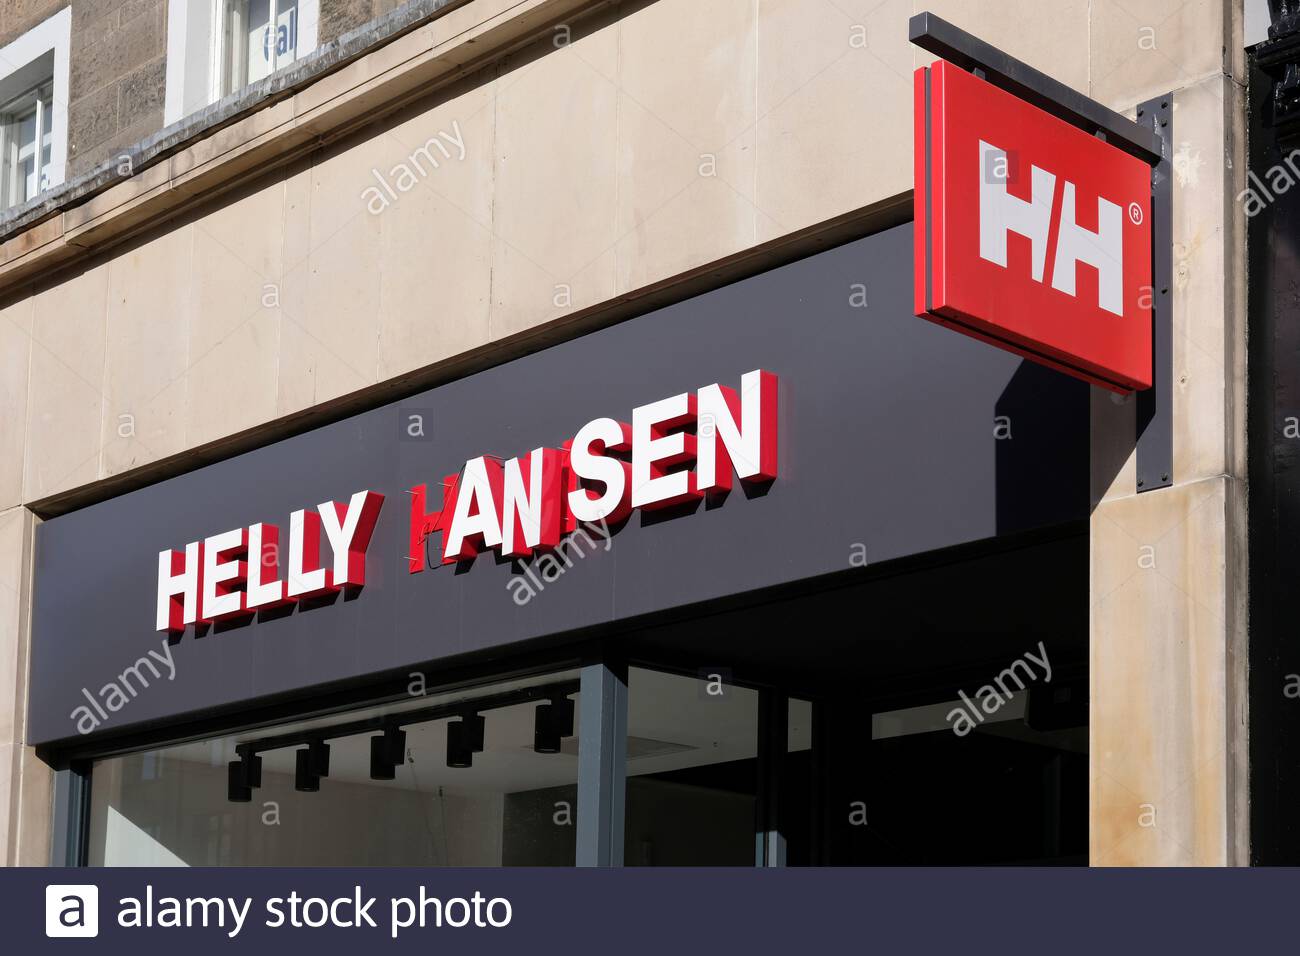 Helly Hansen, minorista de ropa y equipamiento deportivo, George Street, Edimburgo, Escocia Foto de stock